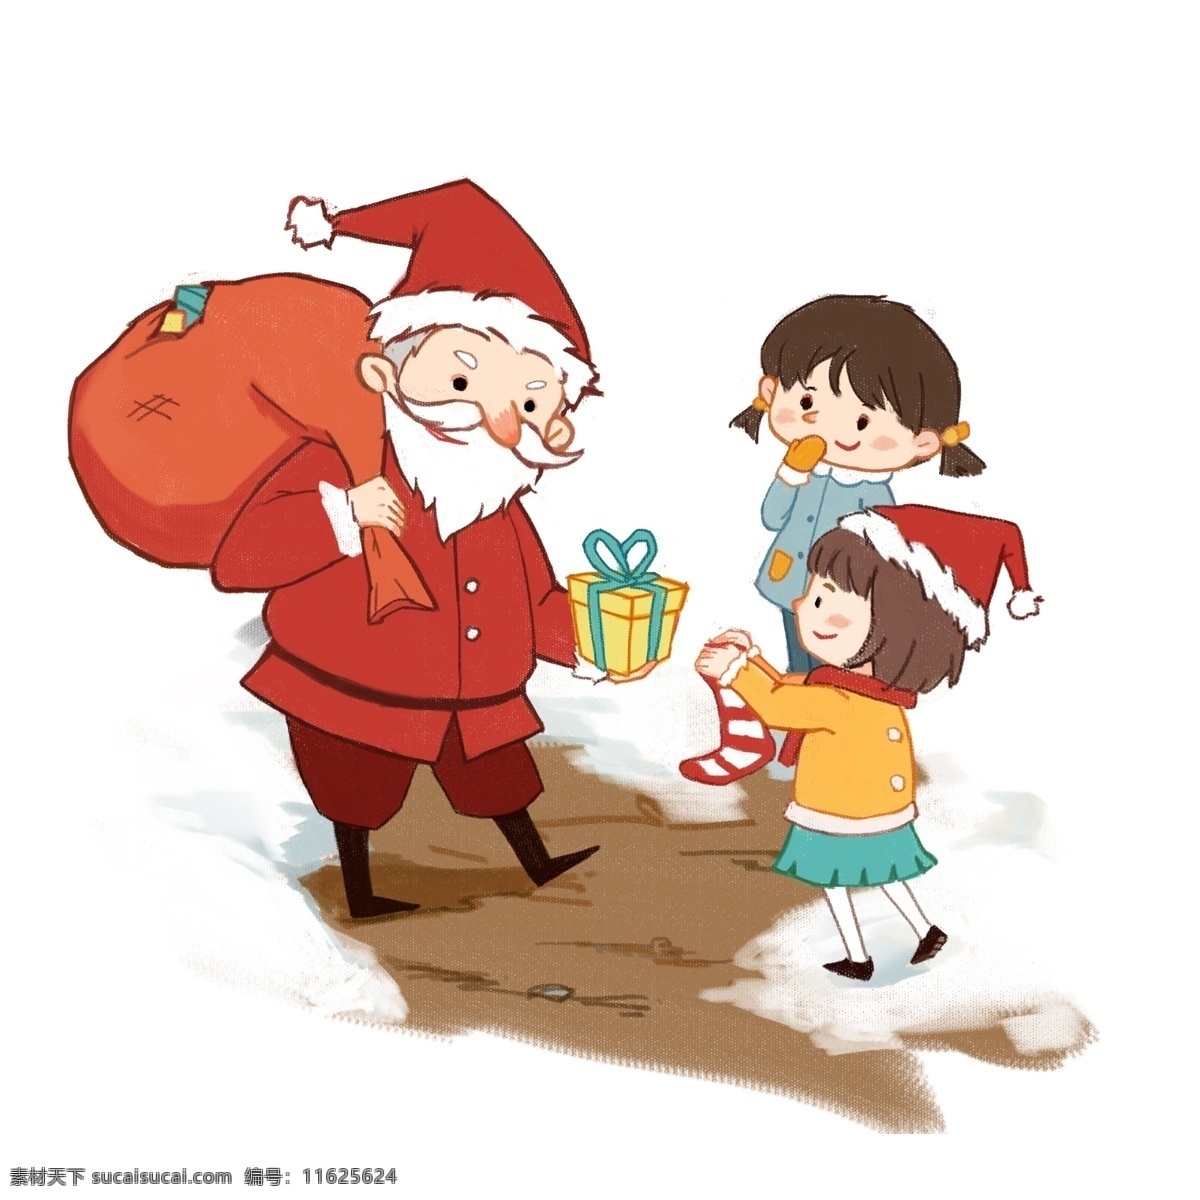 圣诞节 送 圣诞 礼物 圣诞老人 节日 男孩女孩系列 传统习俗 可爱 卡通风 童话风格 插画 壁纸 装饰画